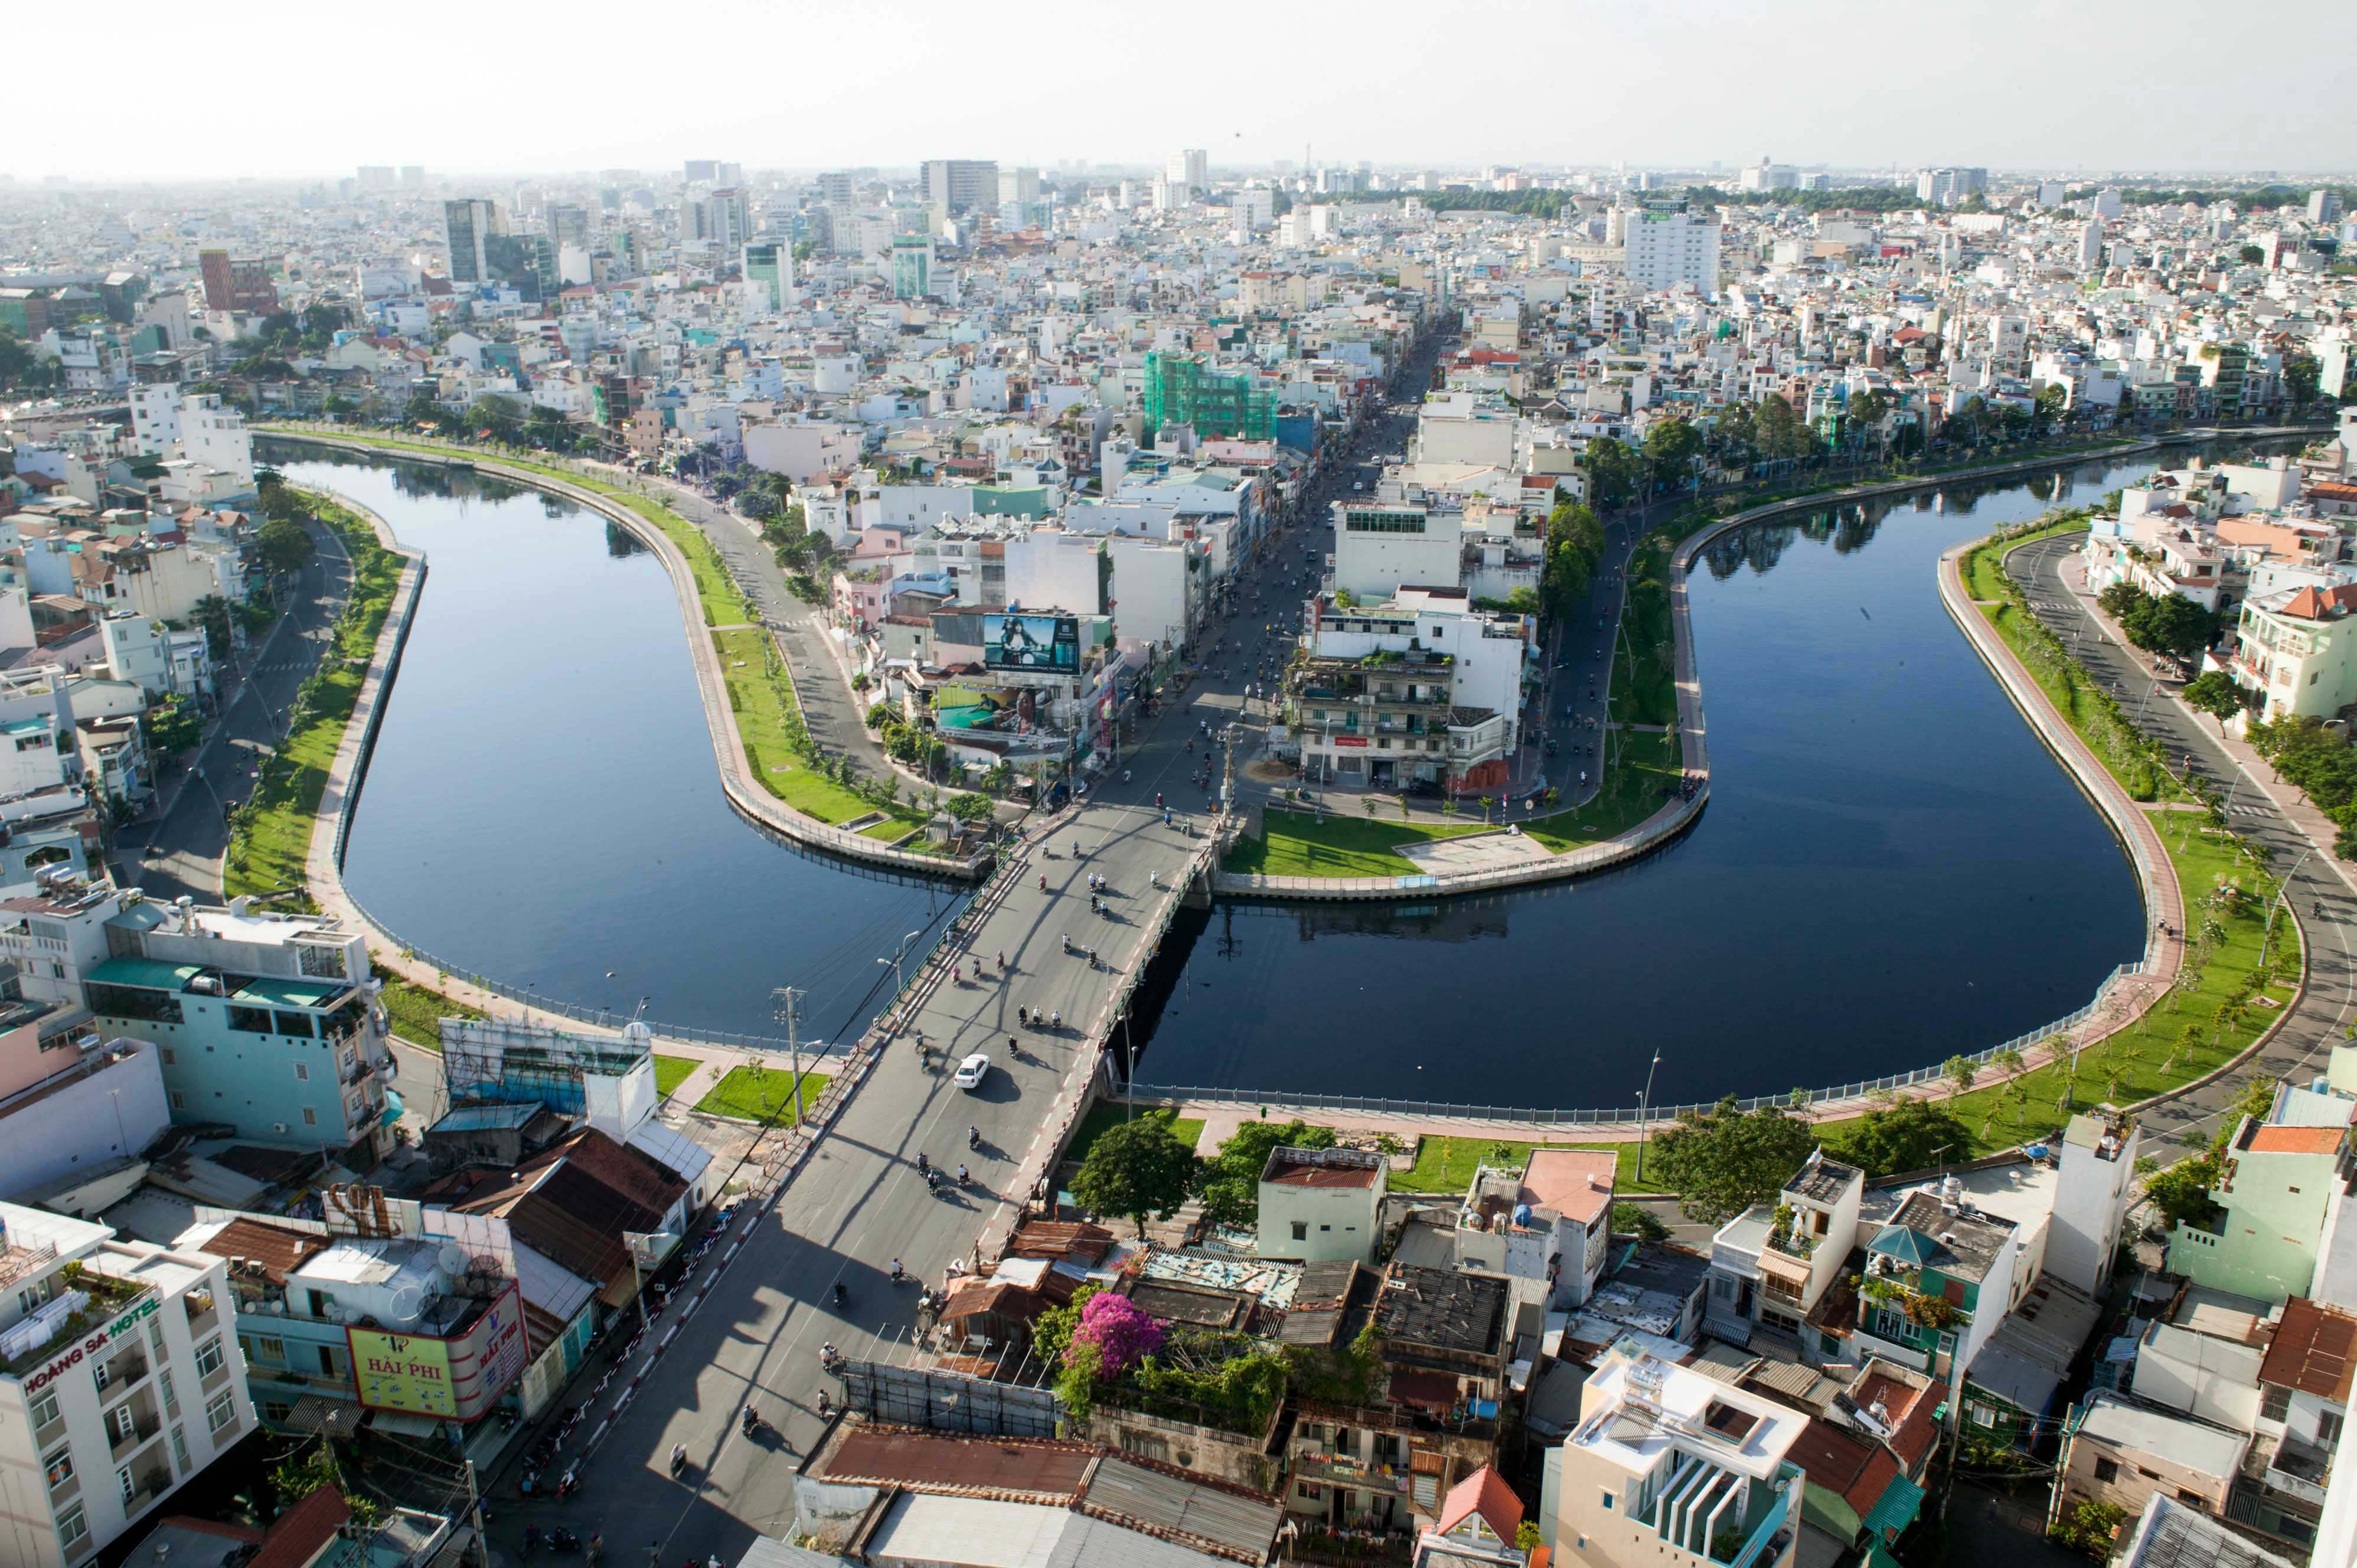 Lãng phí nguồn lực sông, rạch Sài Gòn                     